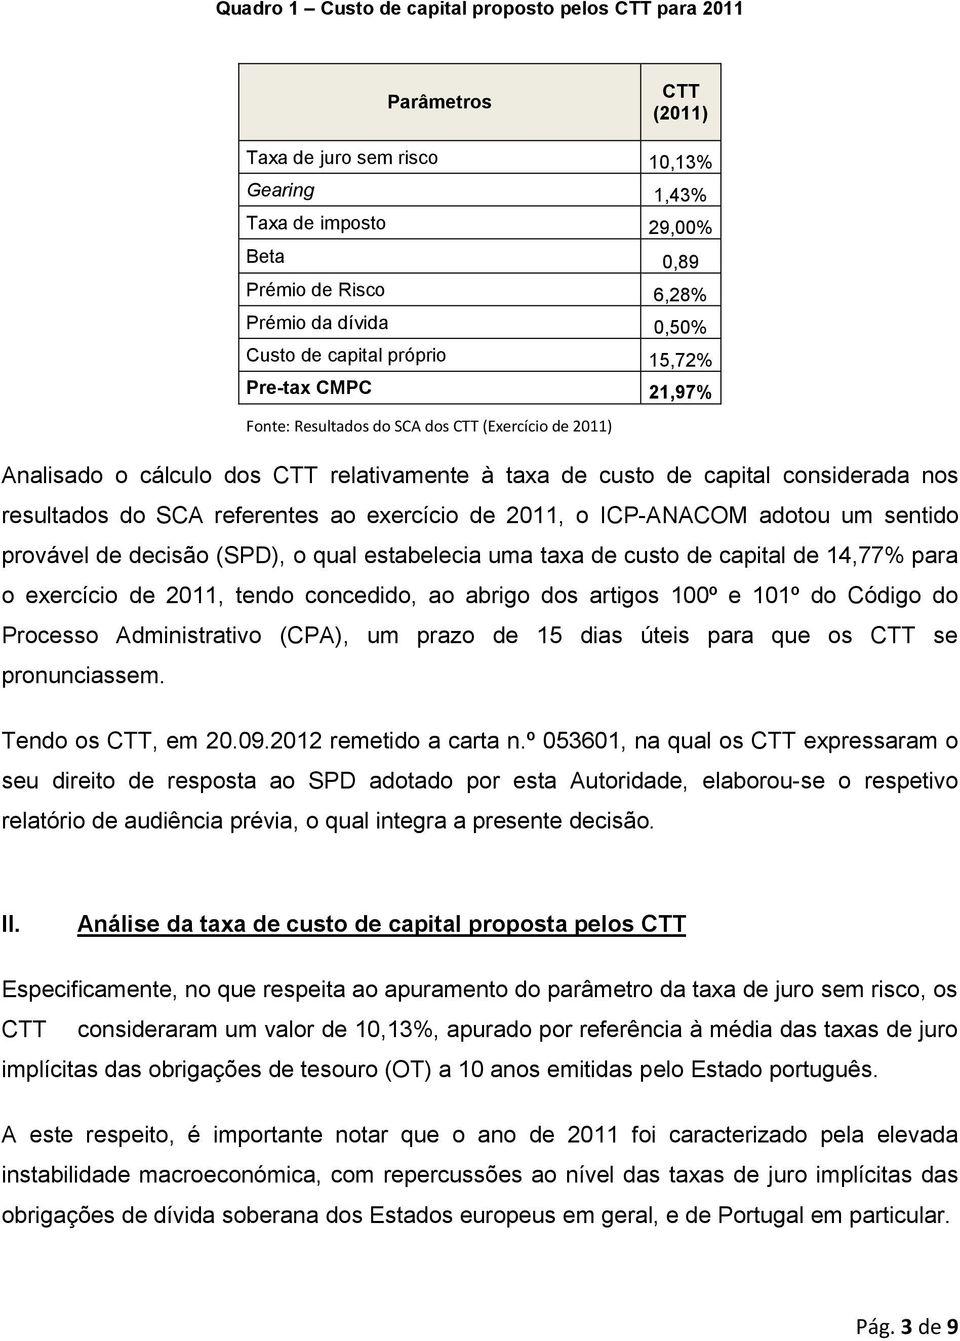 resultados do SCA referentes ao exercício de 2011, o ICP-ANACOM adotou um sentido provável de decisão (SPD), o qual estabelecia uma taxa de custo de capital de 14,77% para o exercício de 2011, tendo